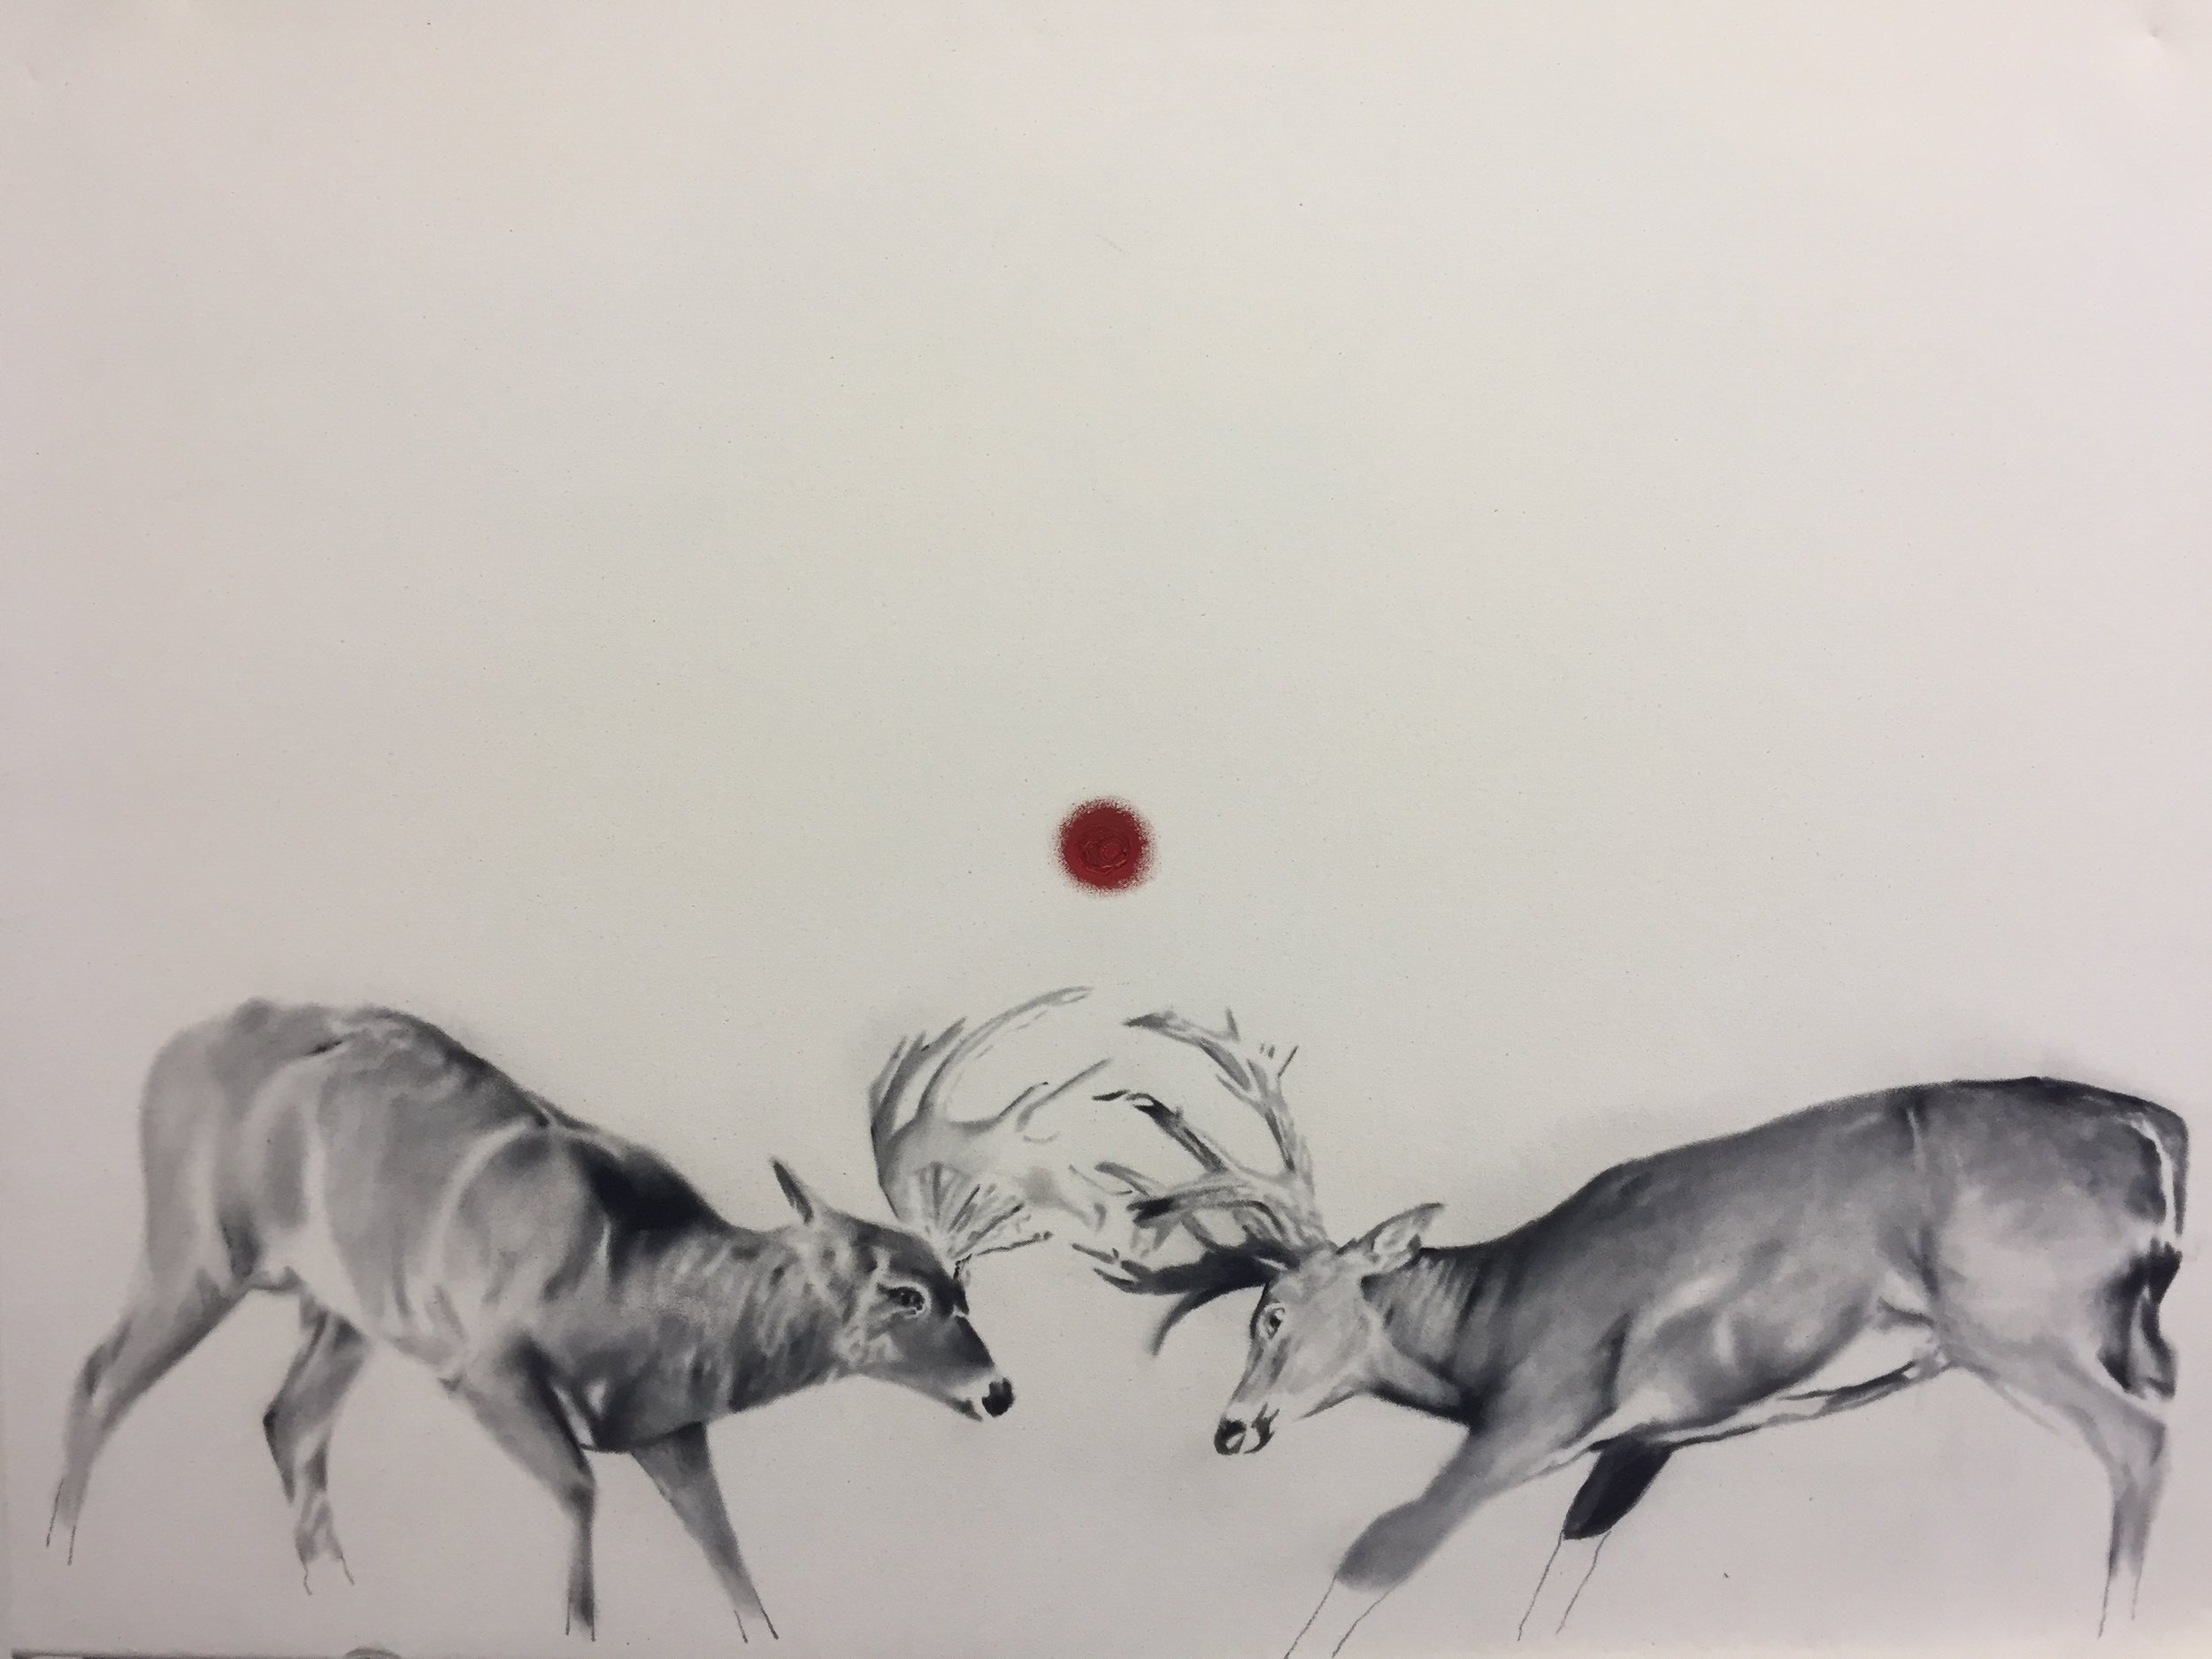   Study for whitetails , 2015.&nbsp;Huile et fusain sur toile. 2015. 36 x 48 pouces.&nbsp; 